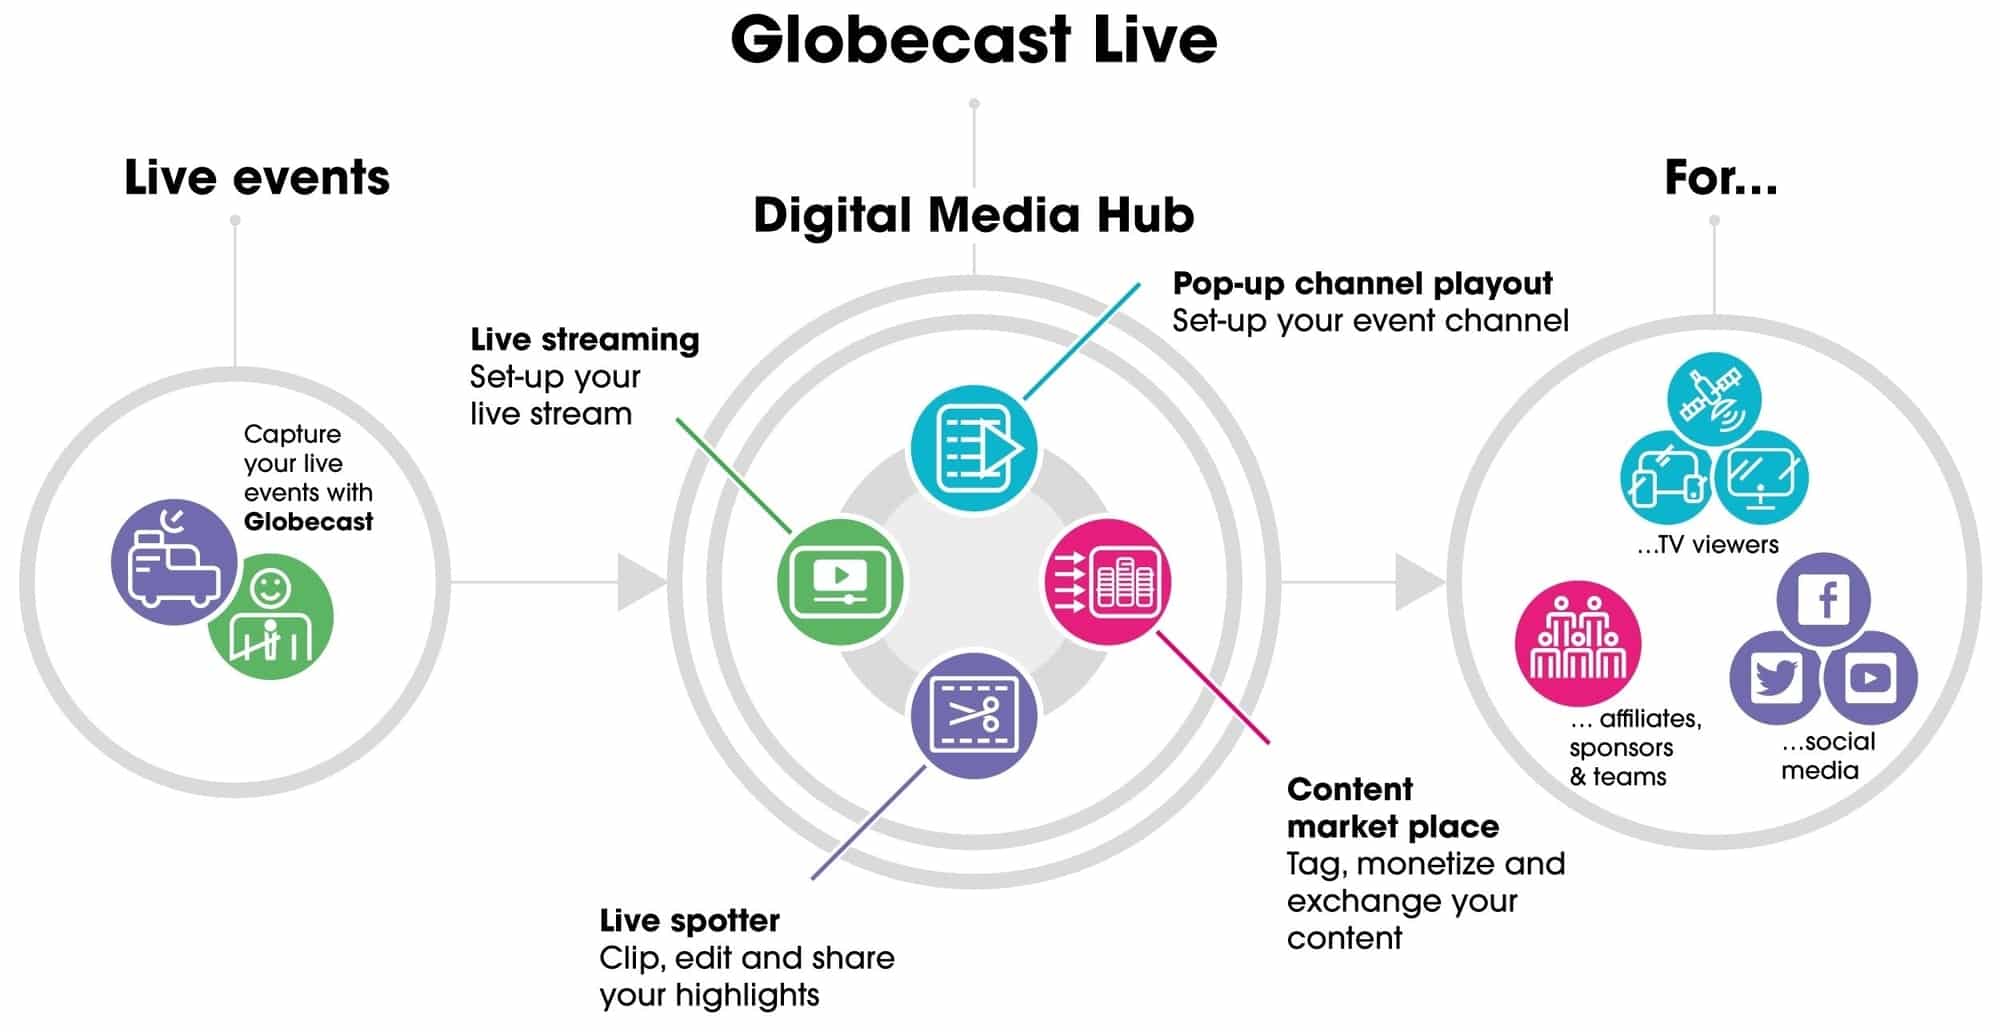 Globecast Live